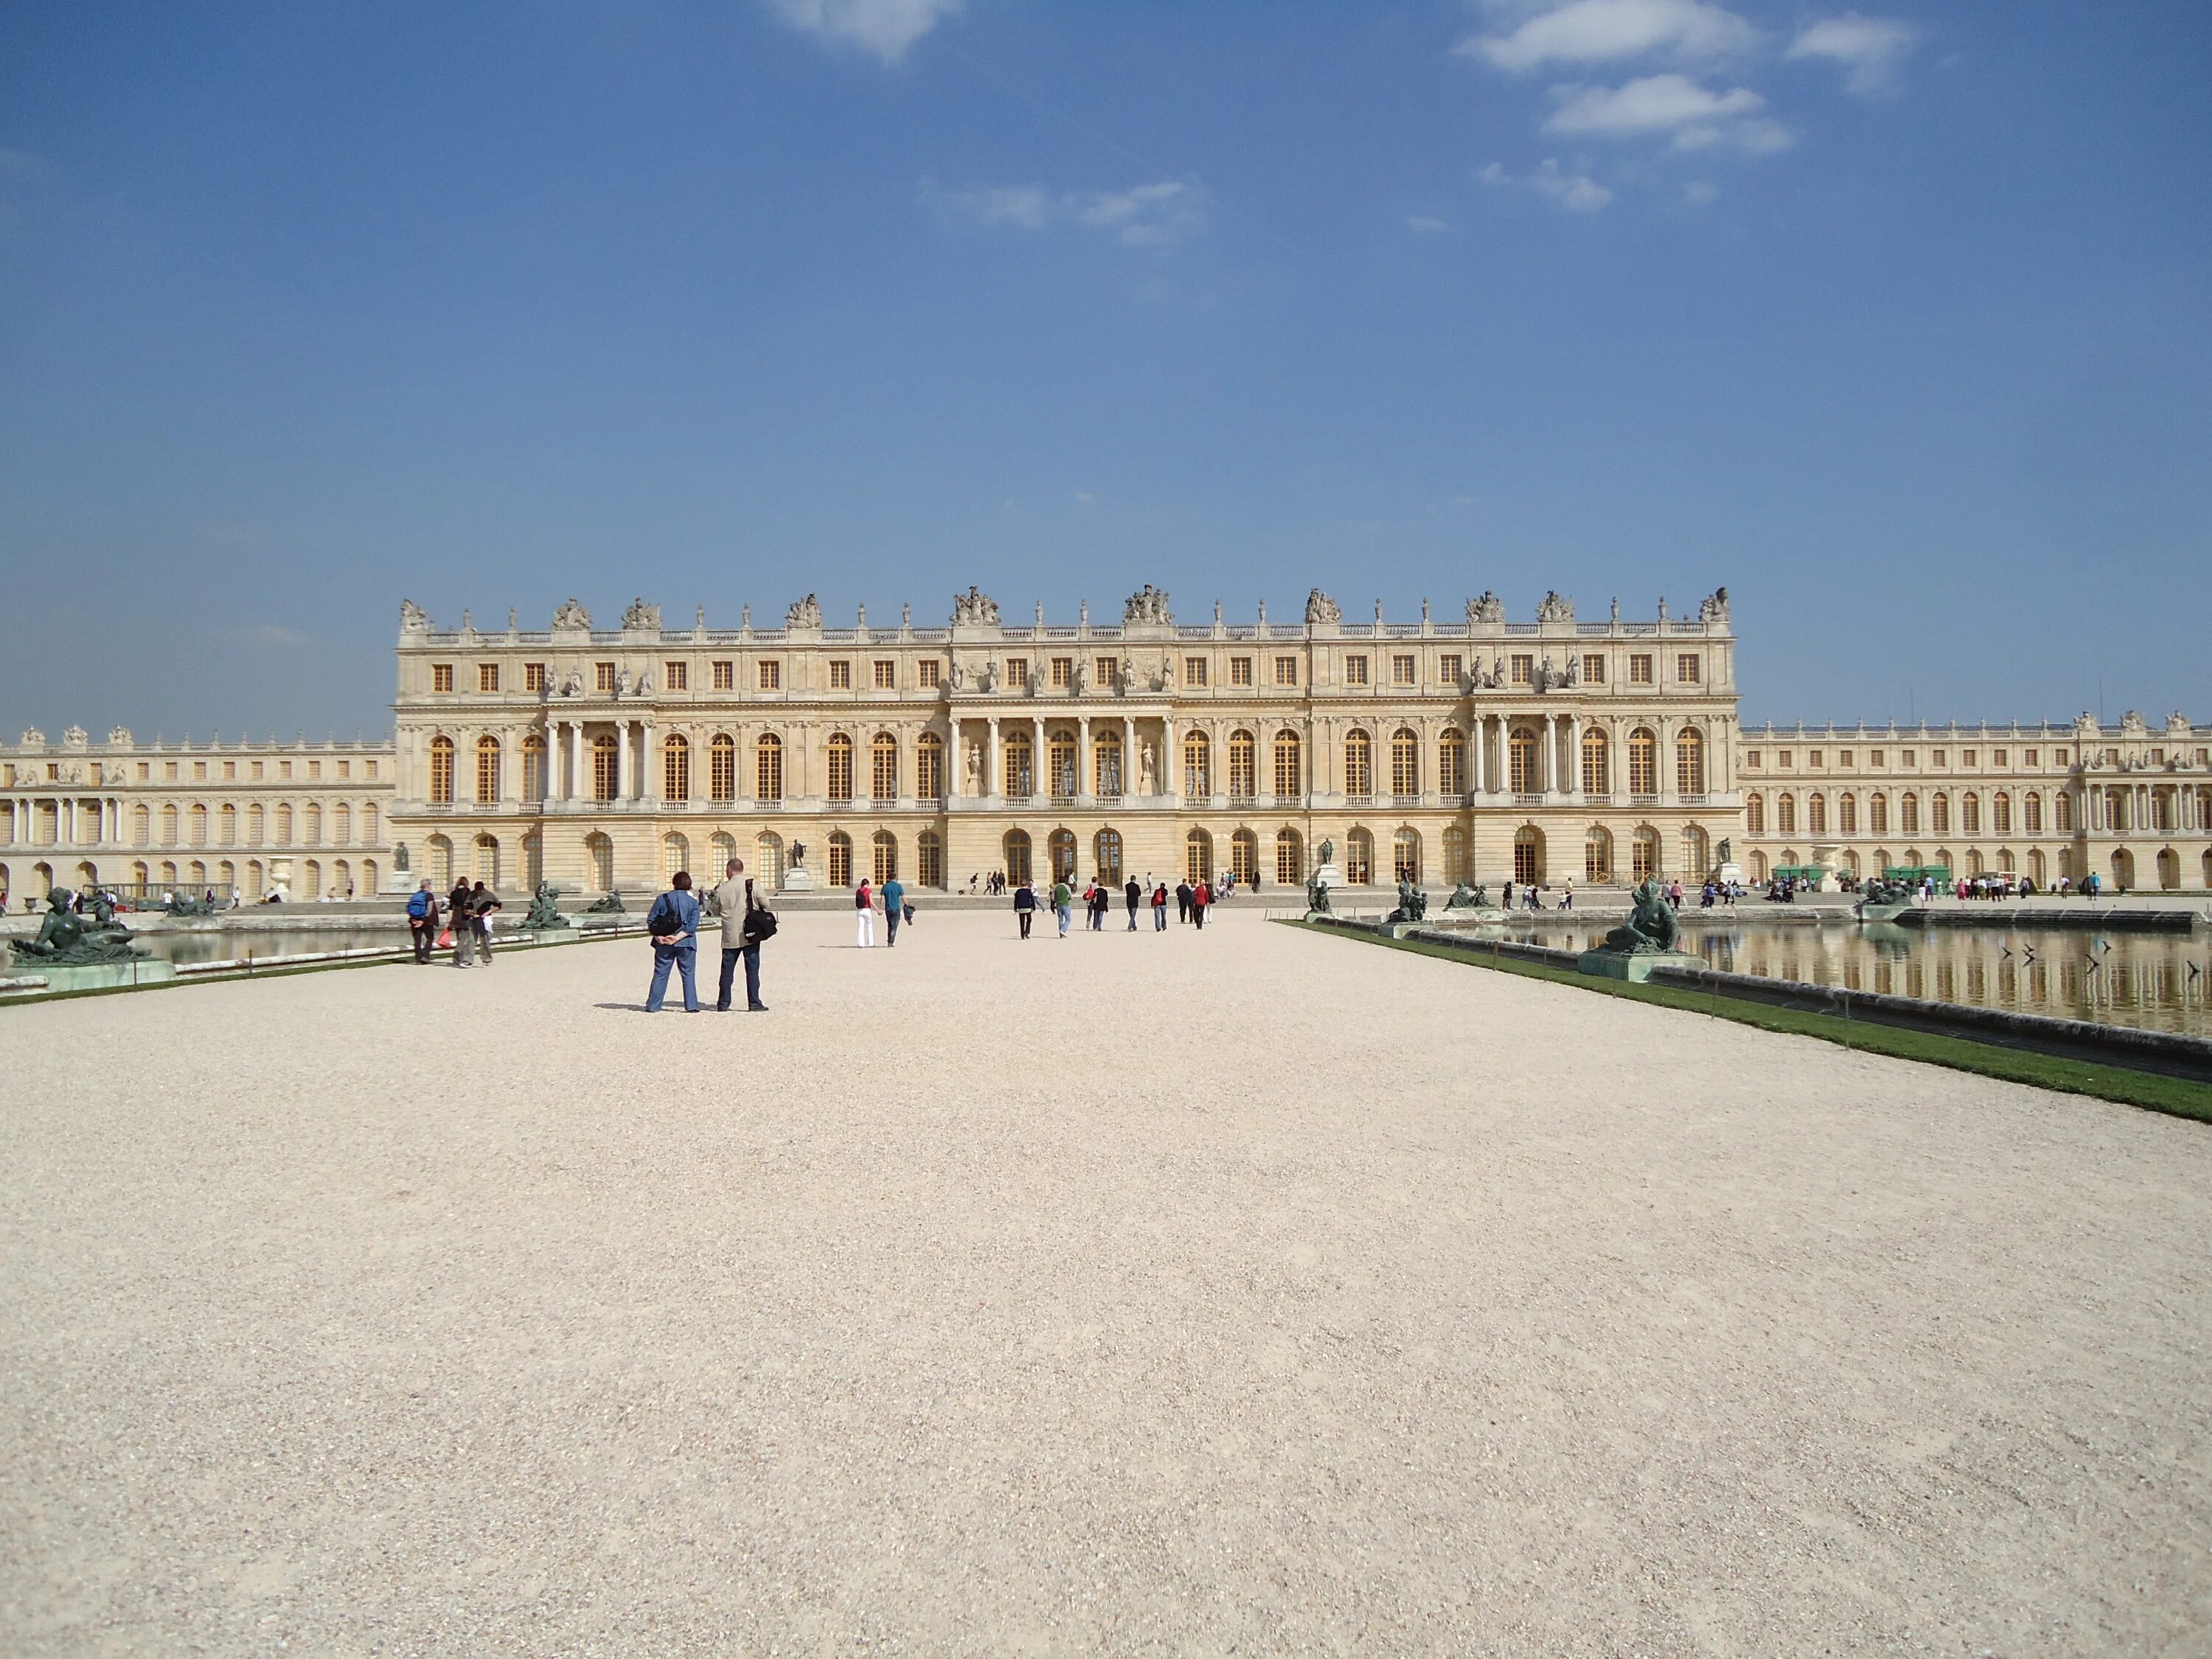 Версальский дворец, Версаль дворец Версаля. Версальский дворец Версаль внутри. Версальский дворец охотничий замок. Площадь Версальского дворца. Время версаль